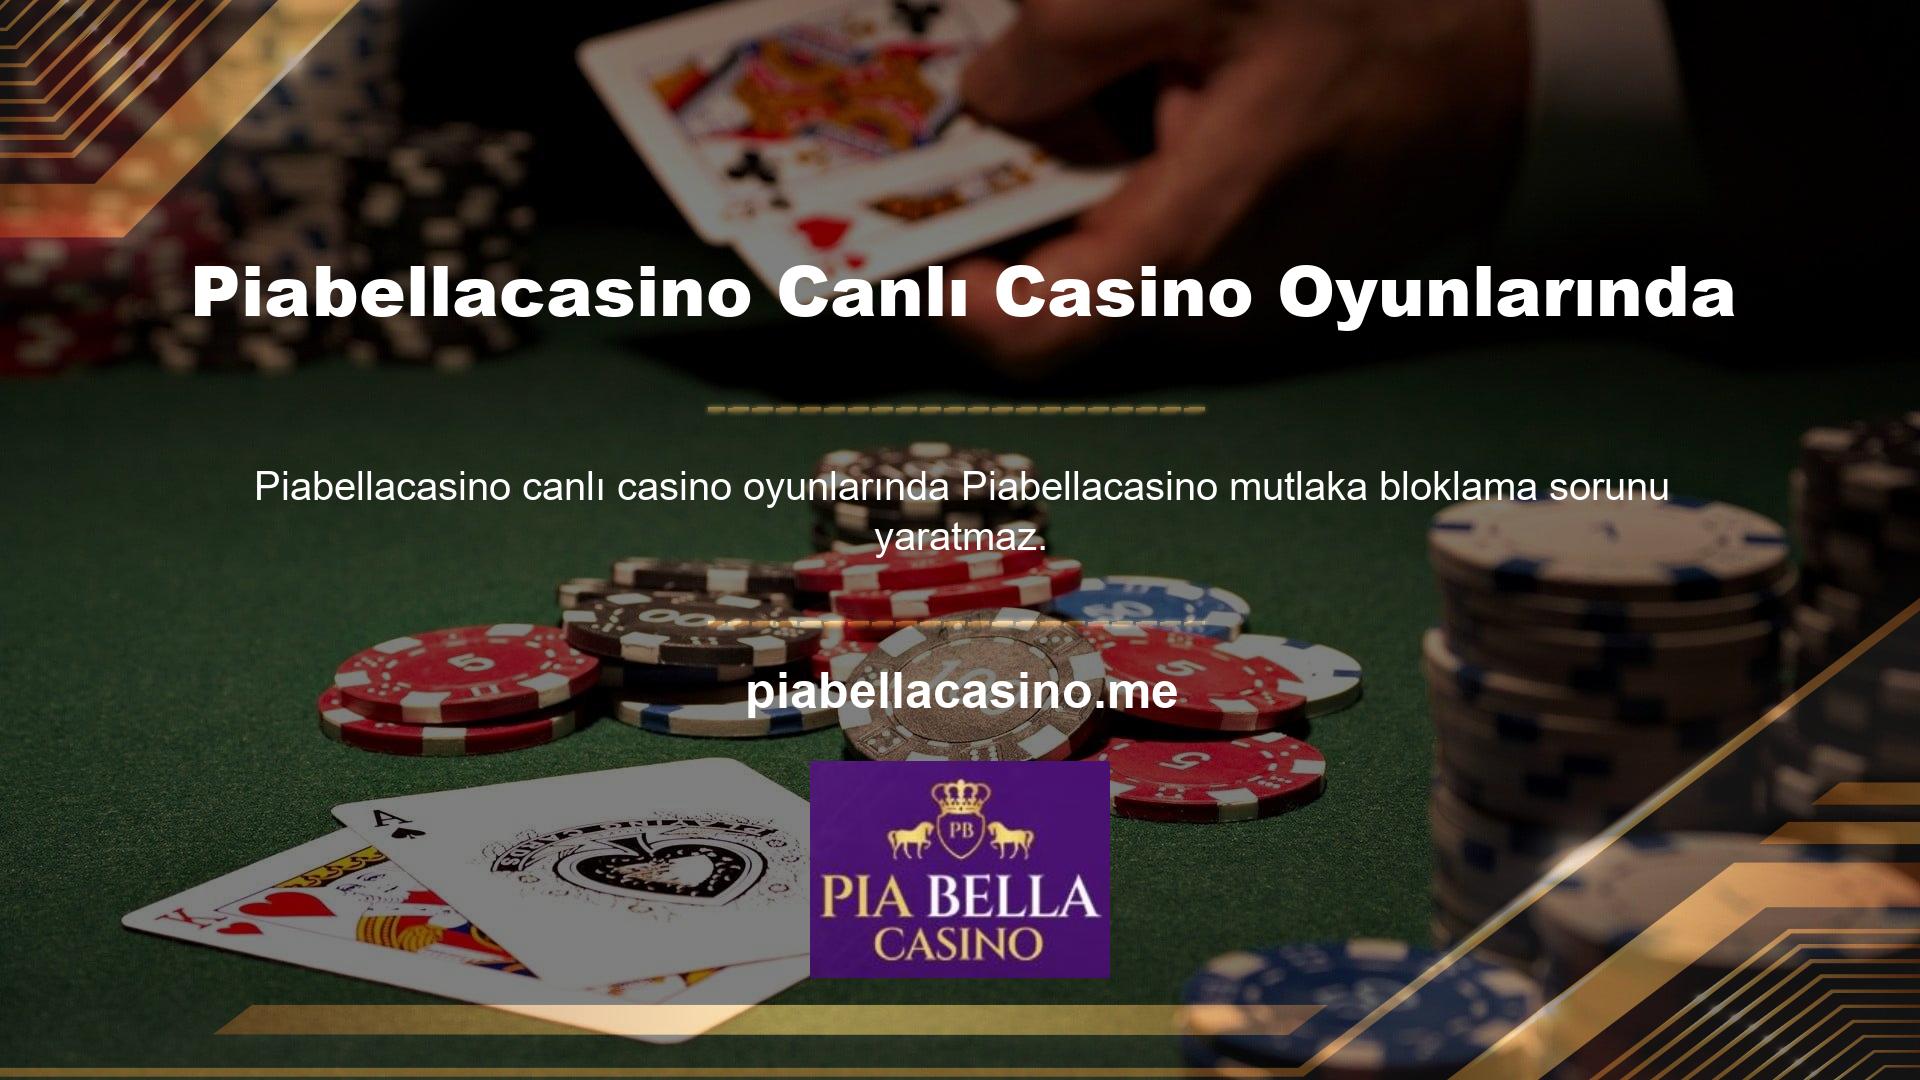 Bu noktada bu iddialı canlı casino sitesinin ana sayfasında ikinci kategori olan “Canlı Casino” sekmesine tıklayarak sitedeki canlı casino oyunlarına ulaşabilirsiniz